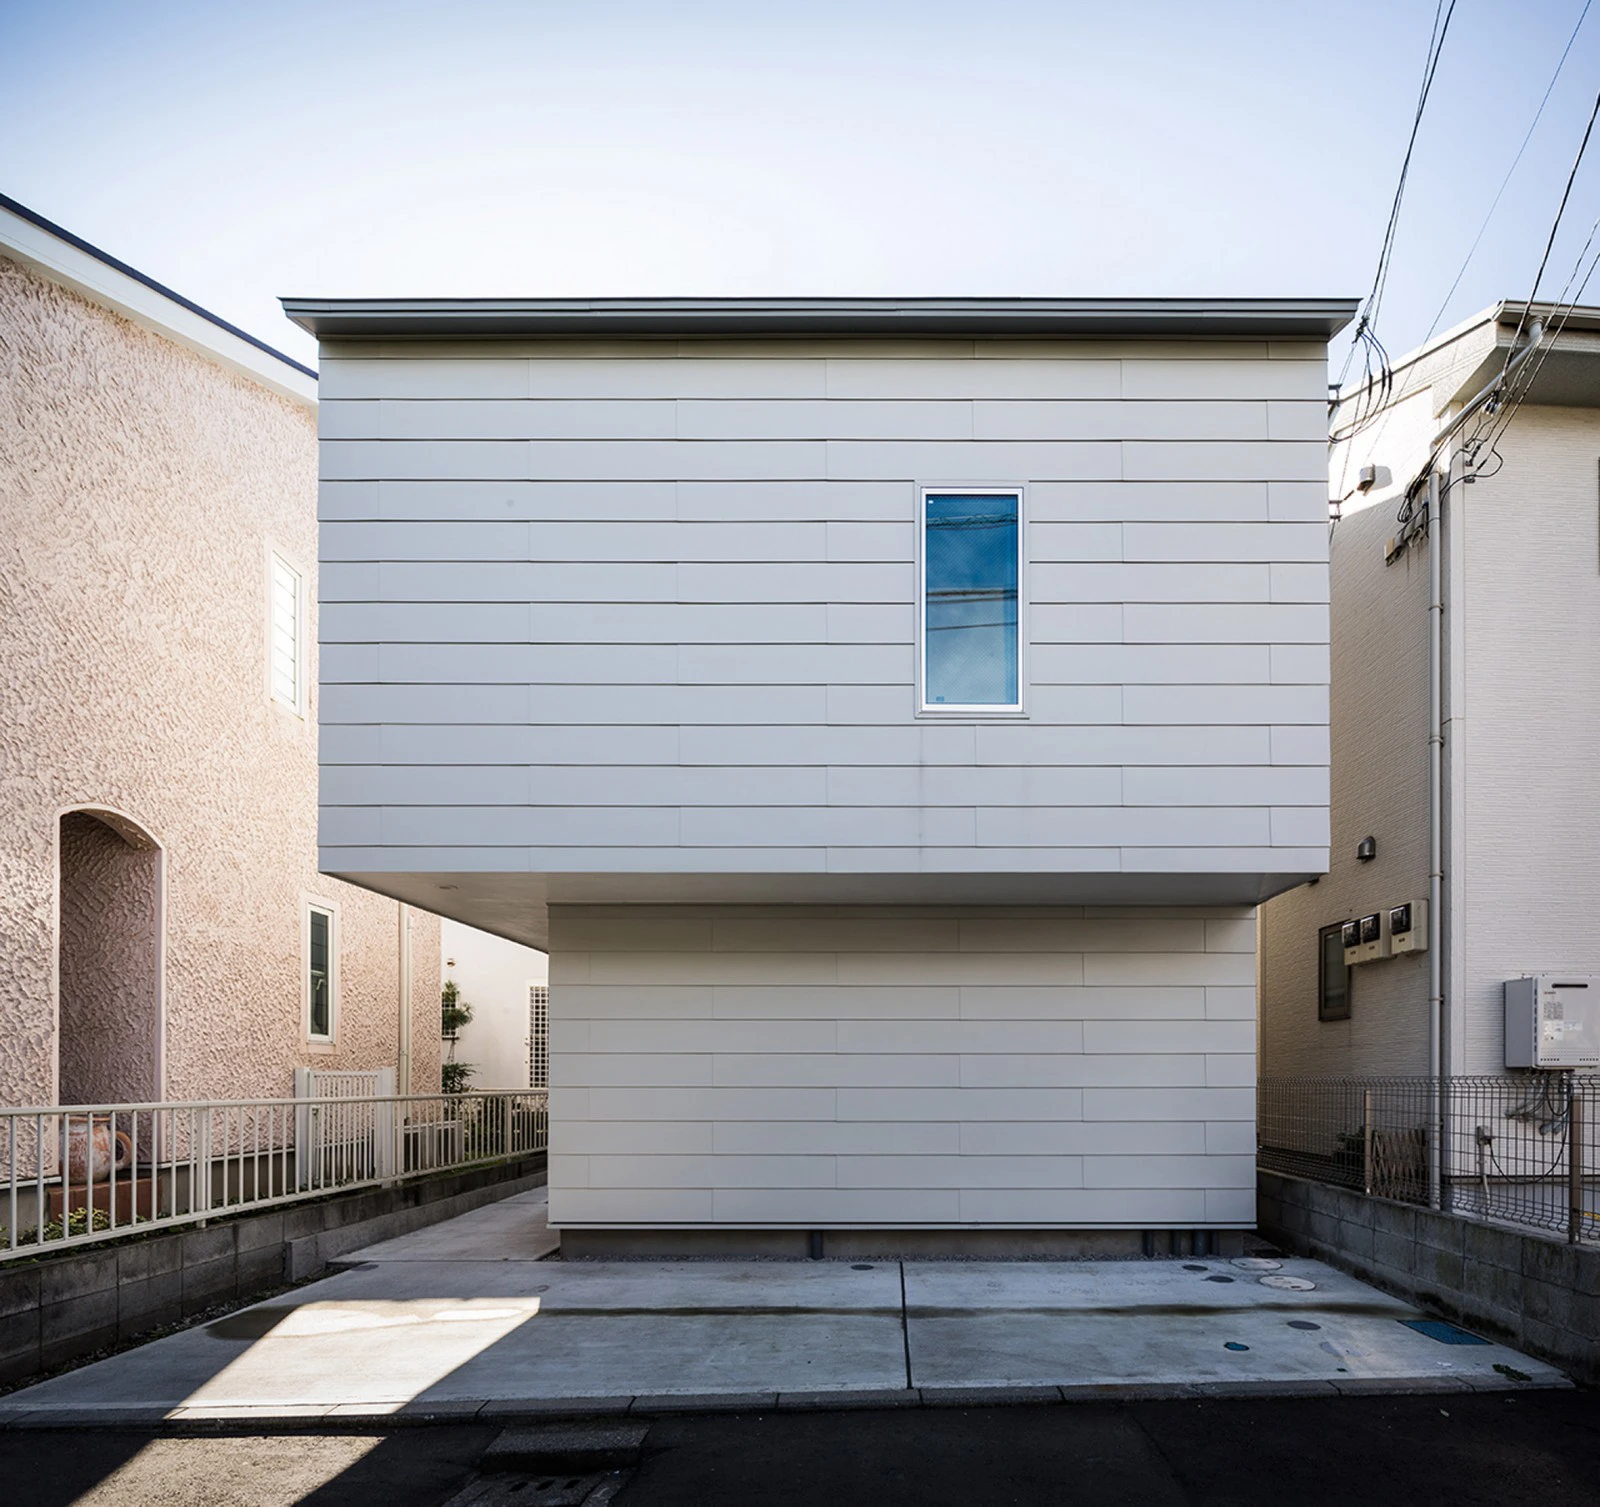 Nằm khiêm tốn trong khoảng không gian chật hẹp giữa 2 tòa nhà cũ, trong một khu dân cư nằm phía trước Vịnh Sagami, Gap House là một công trình được MUU thiết kế với mục tiêu muốn tối ưu hóa diện tích, không gian nhất có thể.